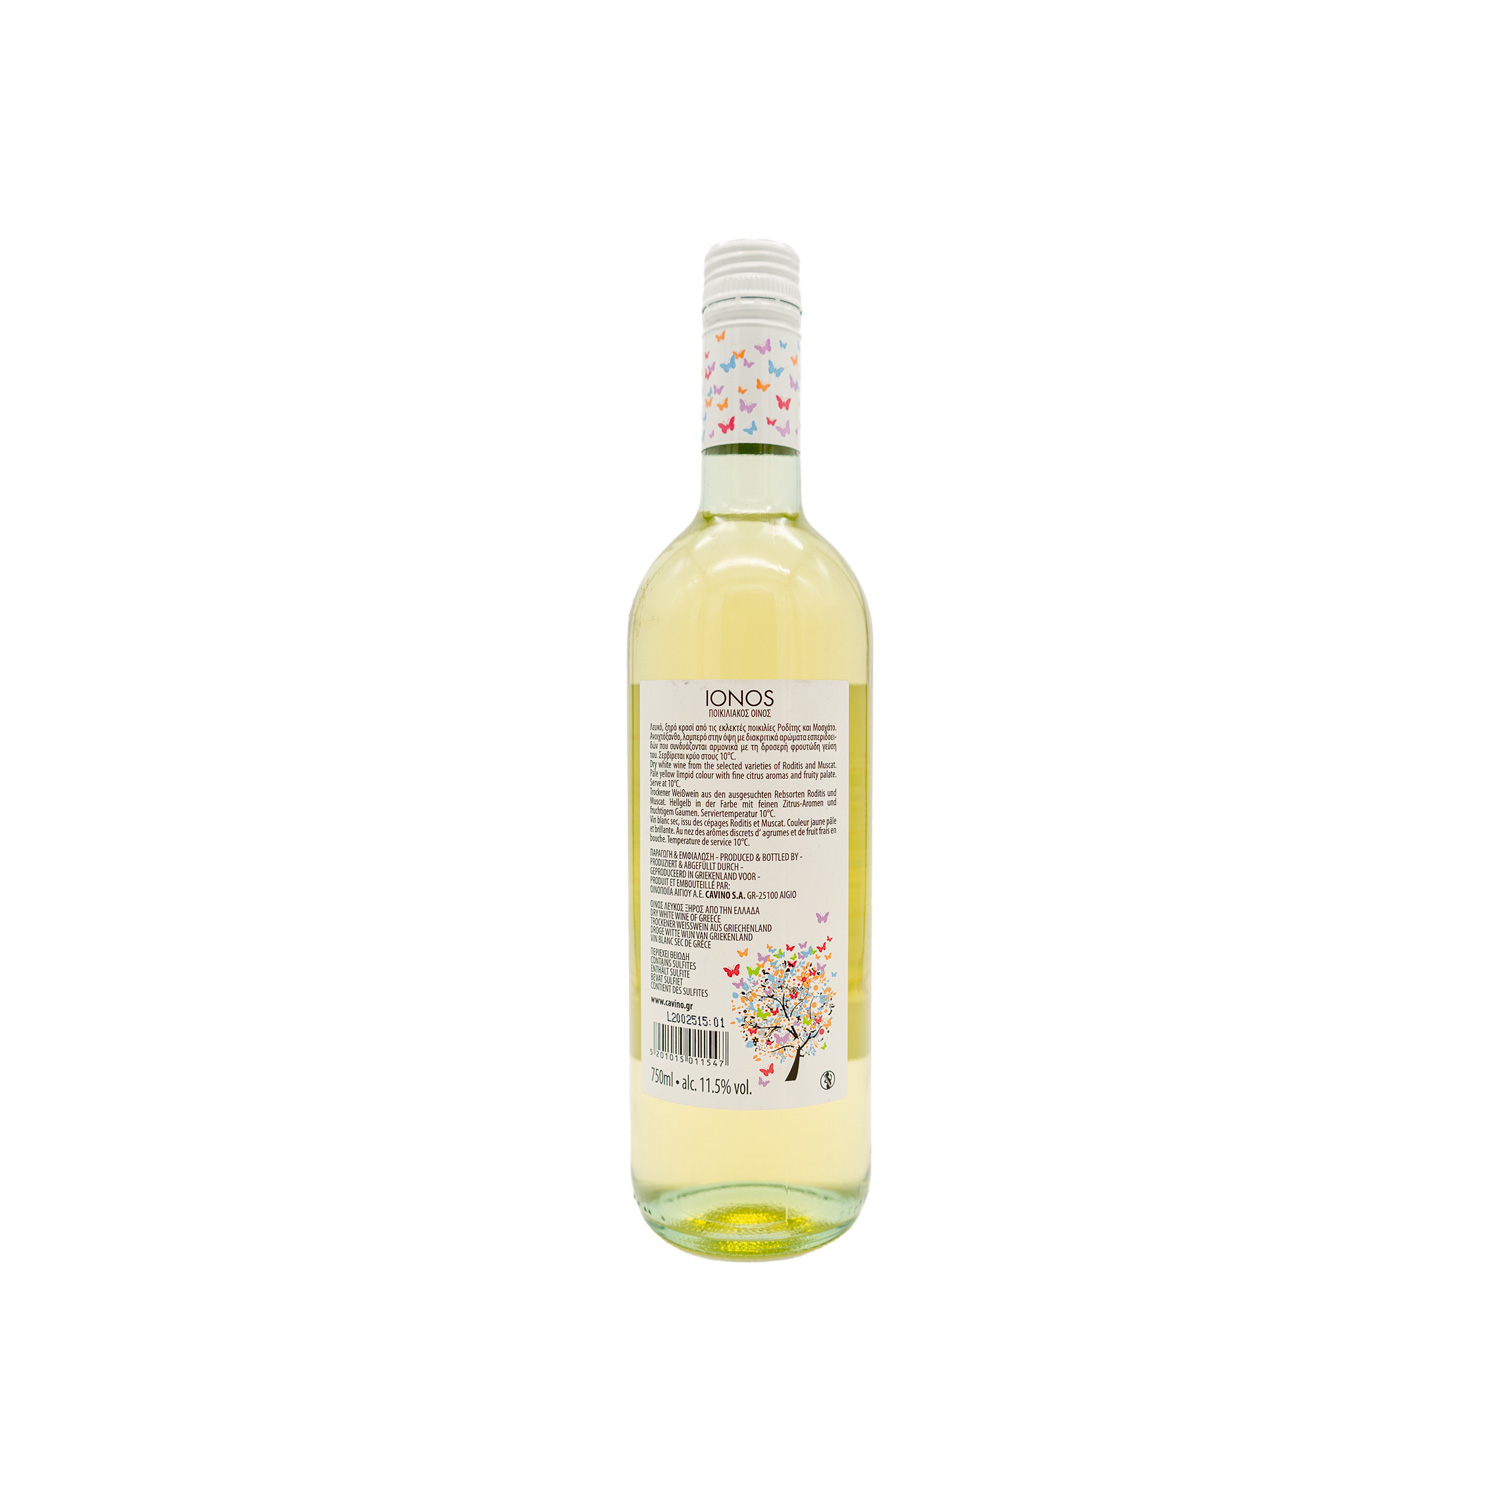 IONOS griechischer Weißwein Moscato 750ml 11.5% vol - Alleskreta